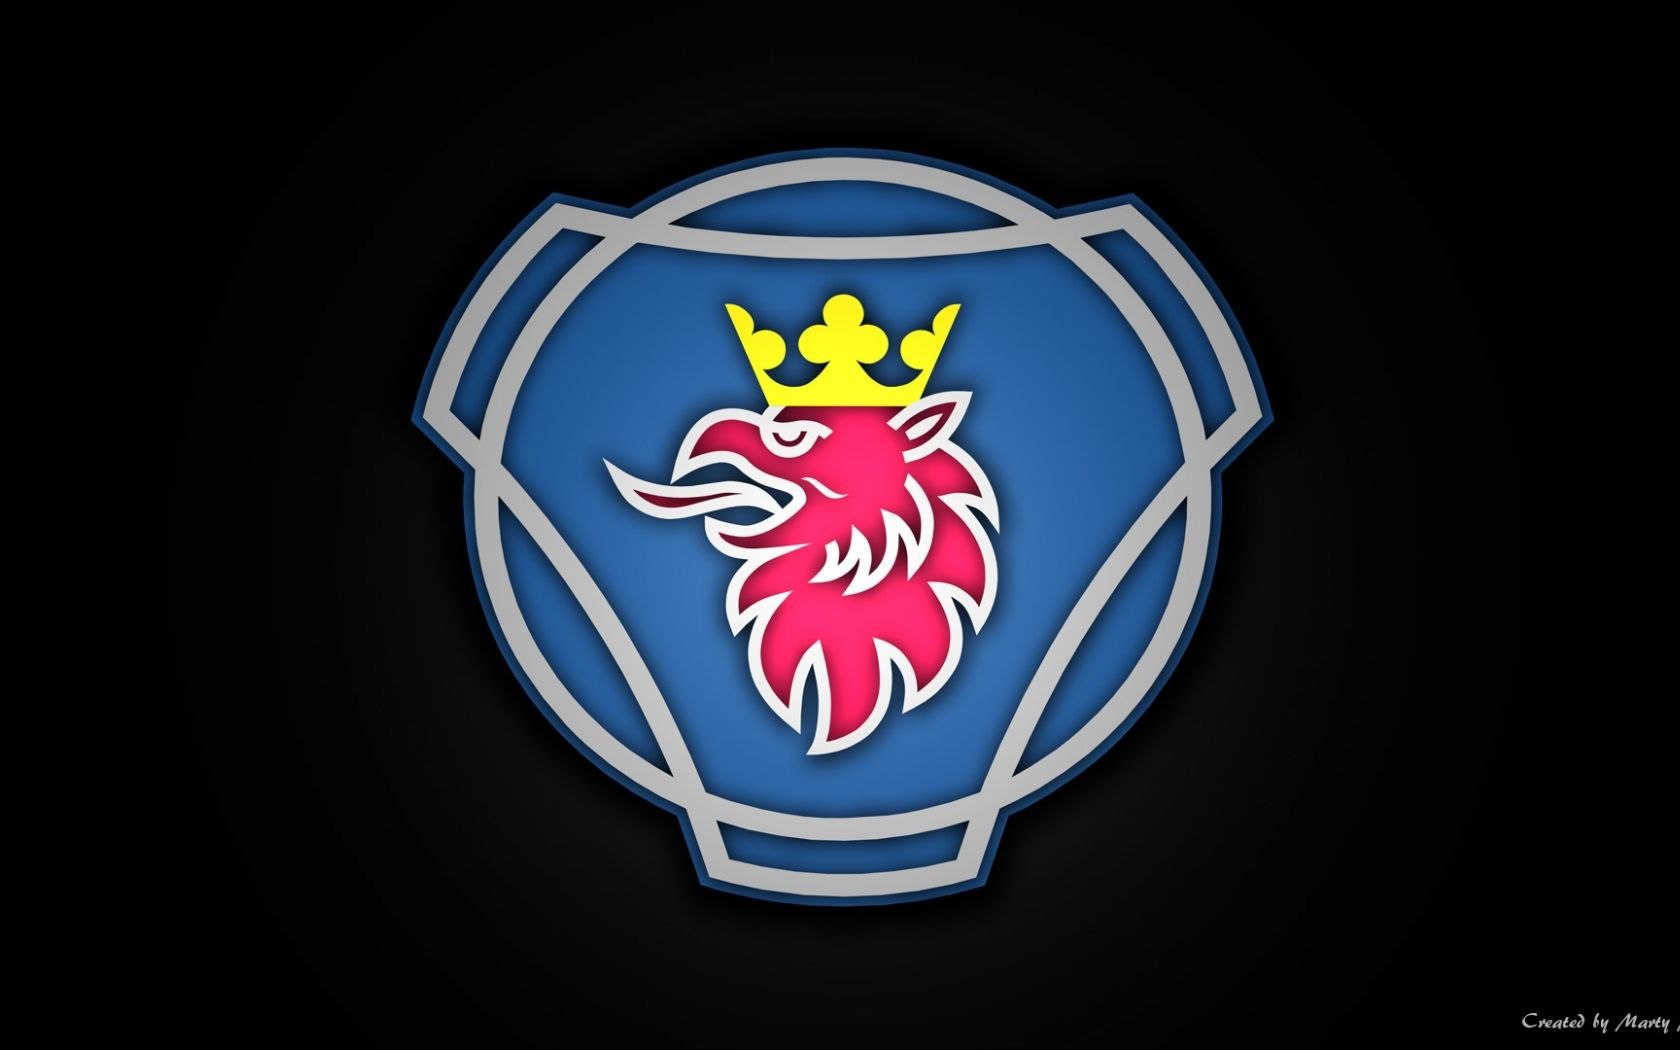 Логотип скания. Scania значок. Герб Скания. Scania Vabis логотип. Скания логотип Грифон.